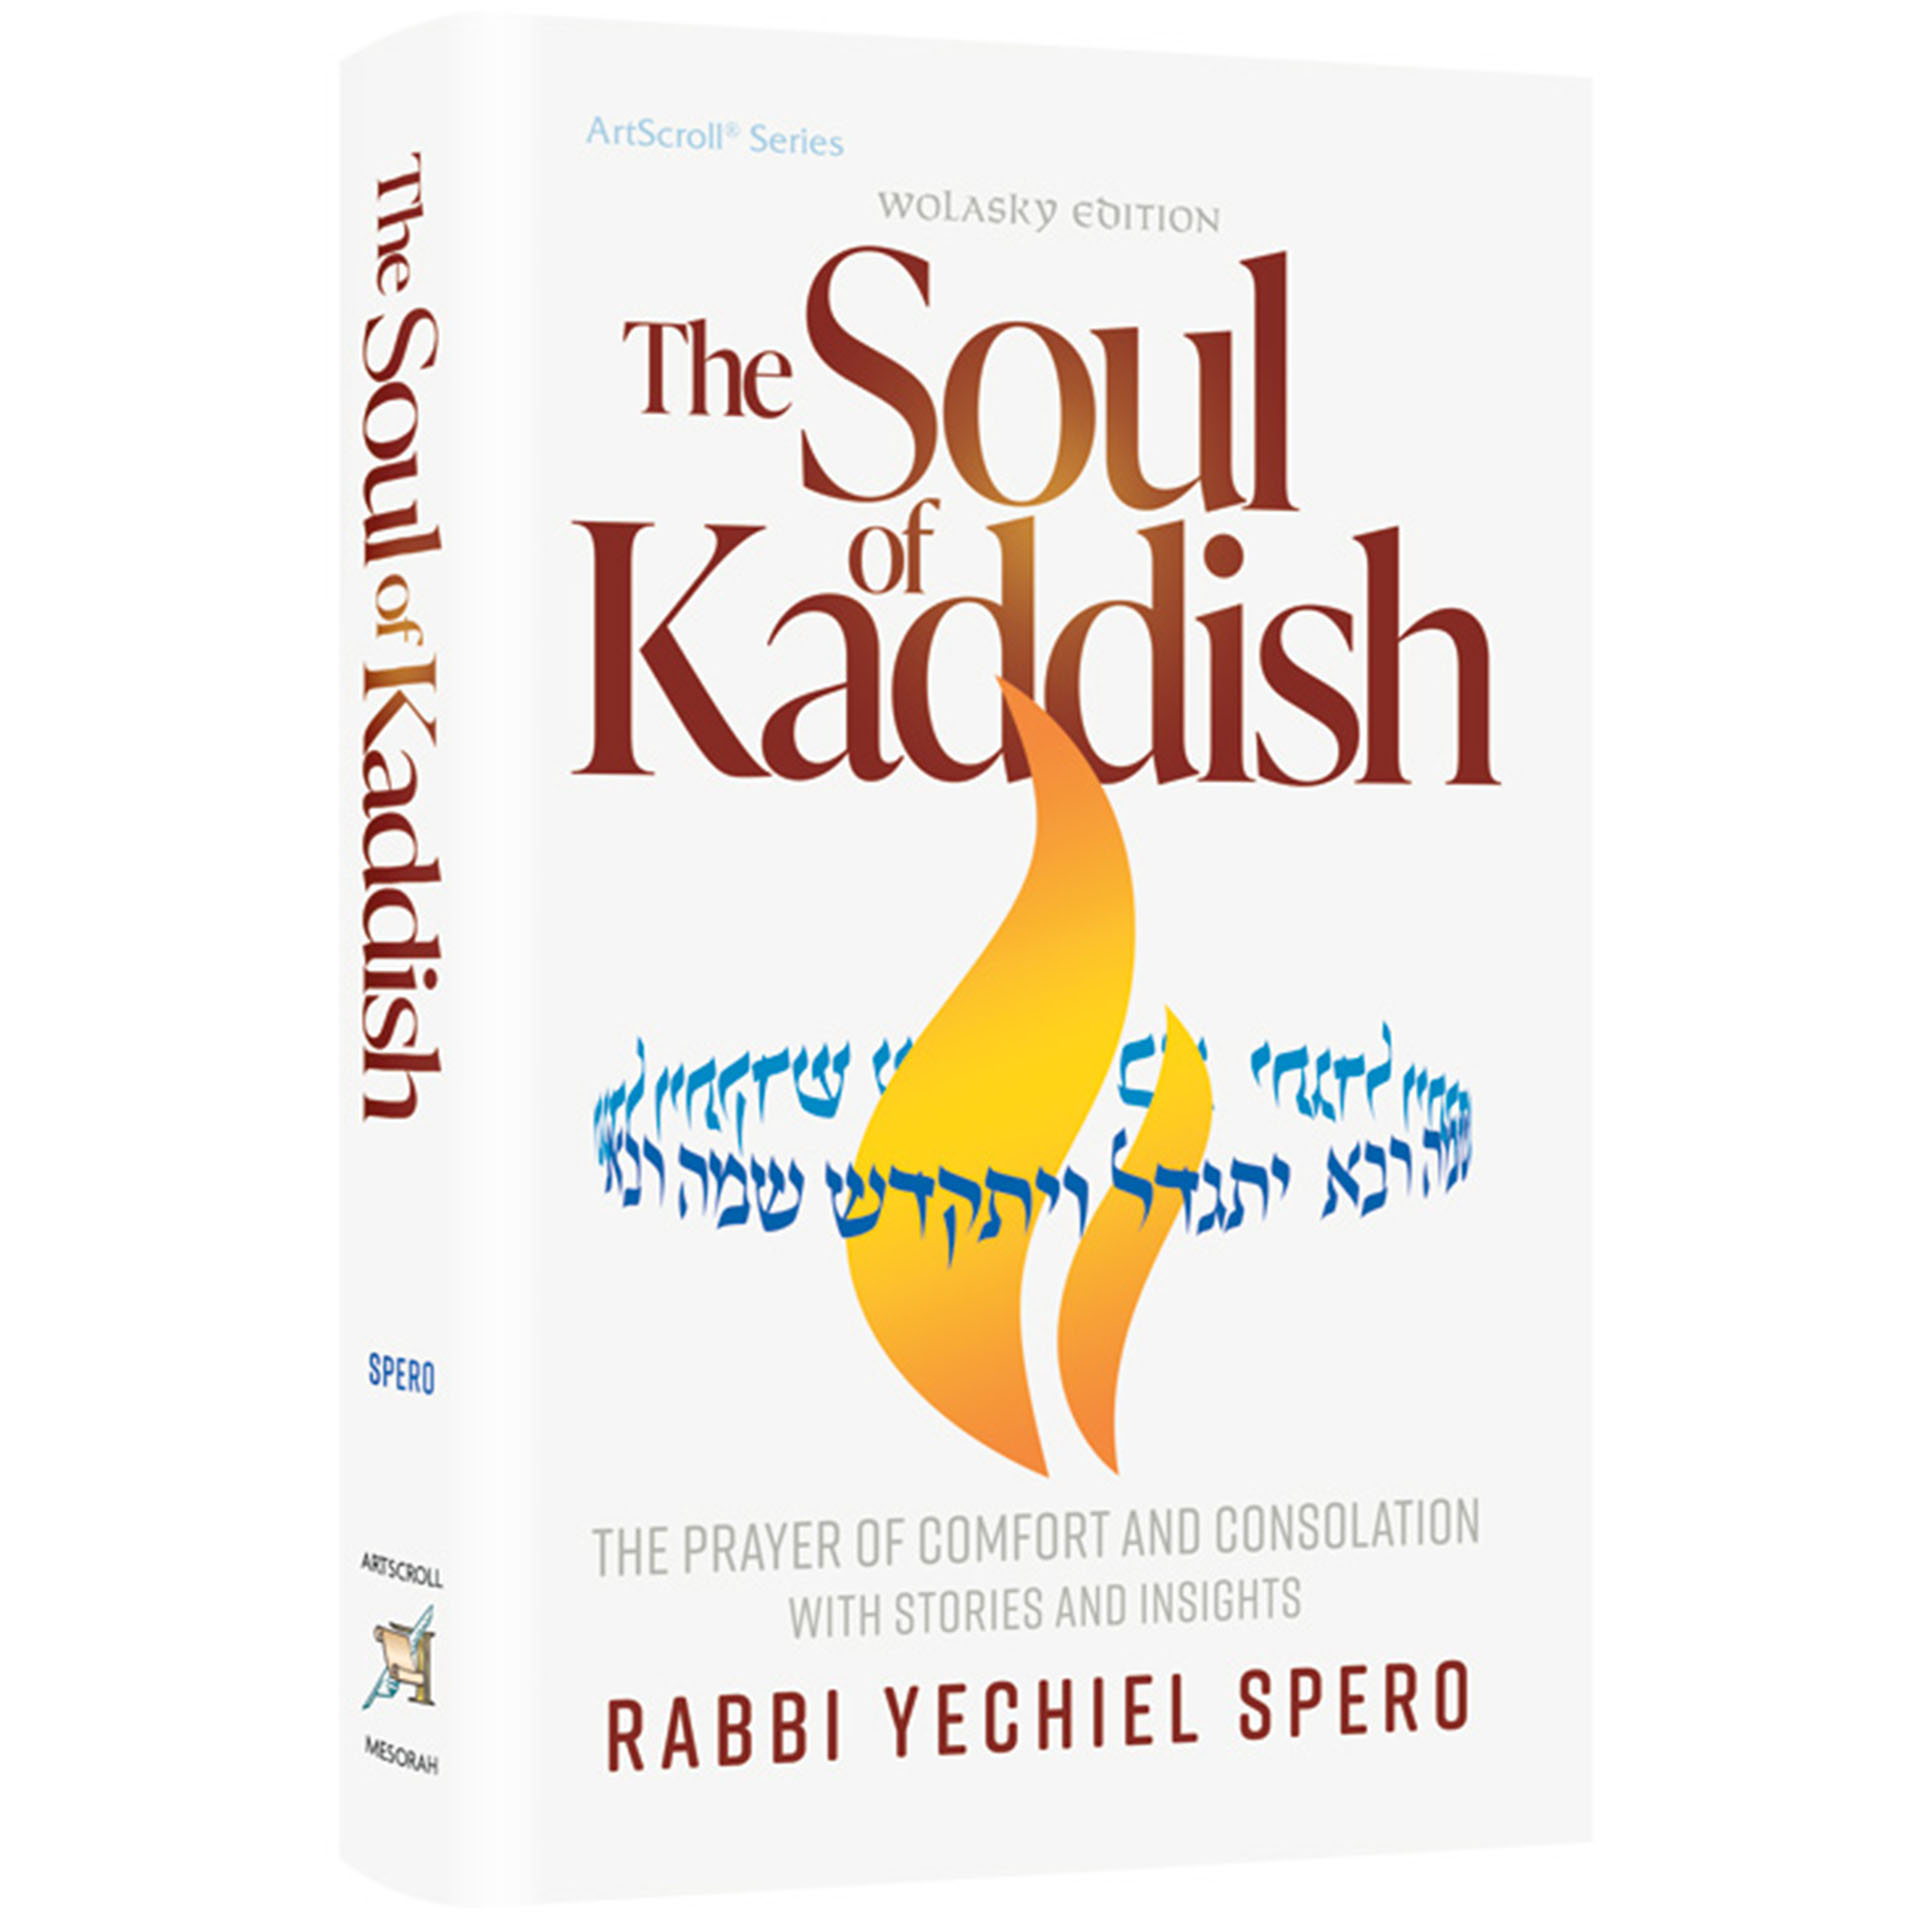 THE SOUL OF KADDISH